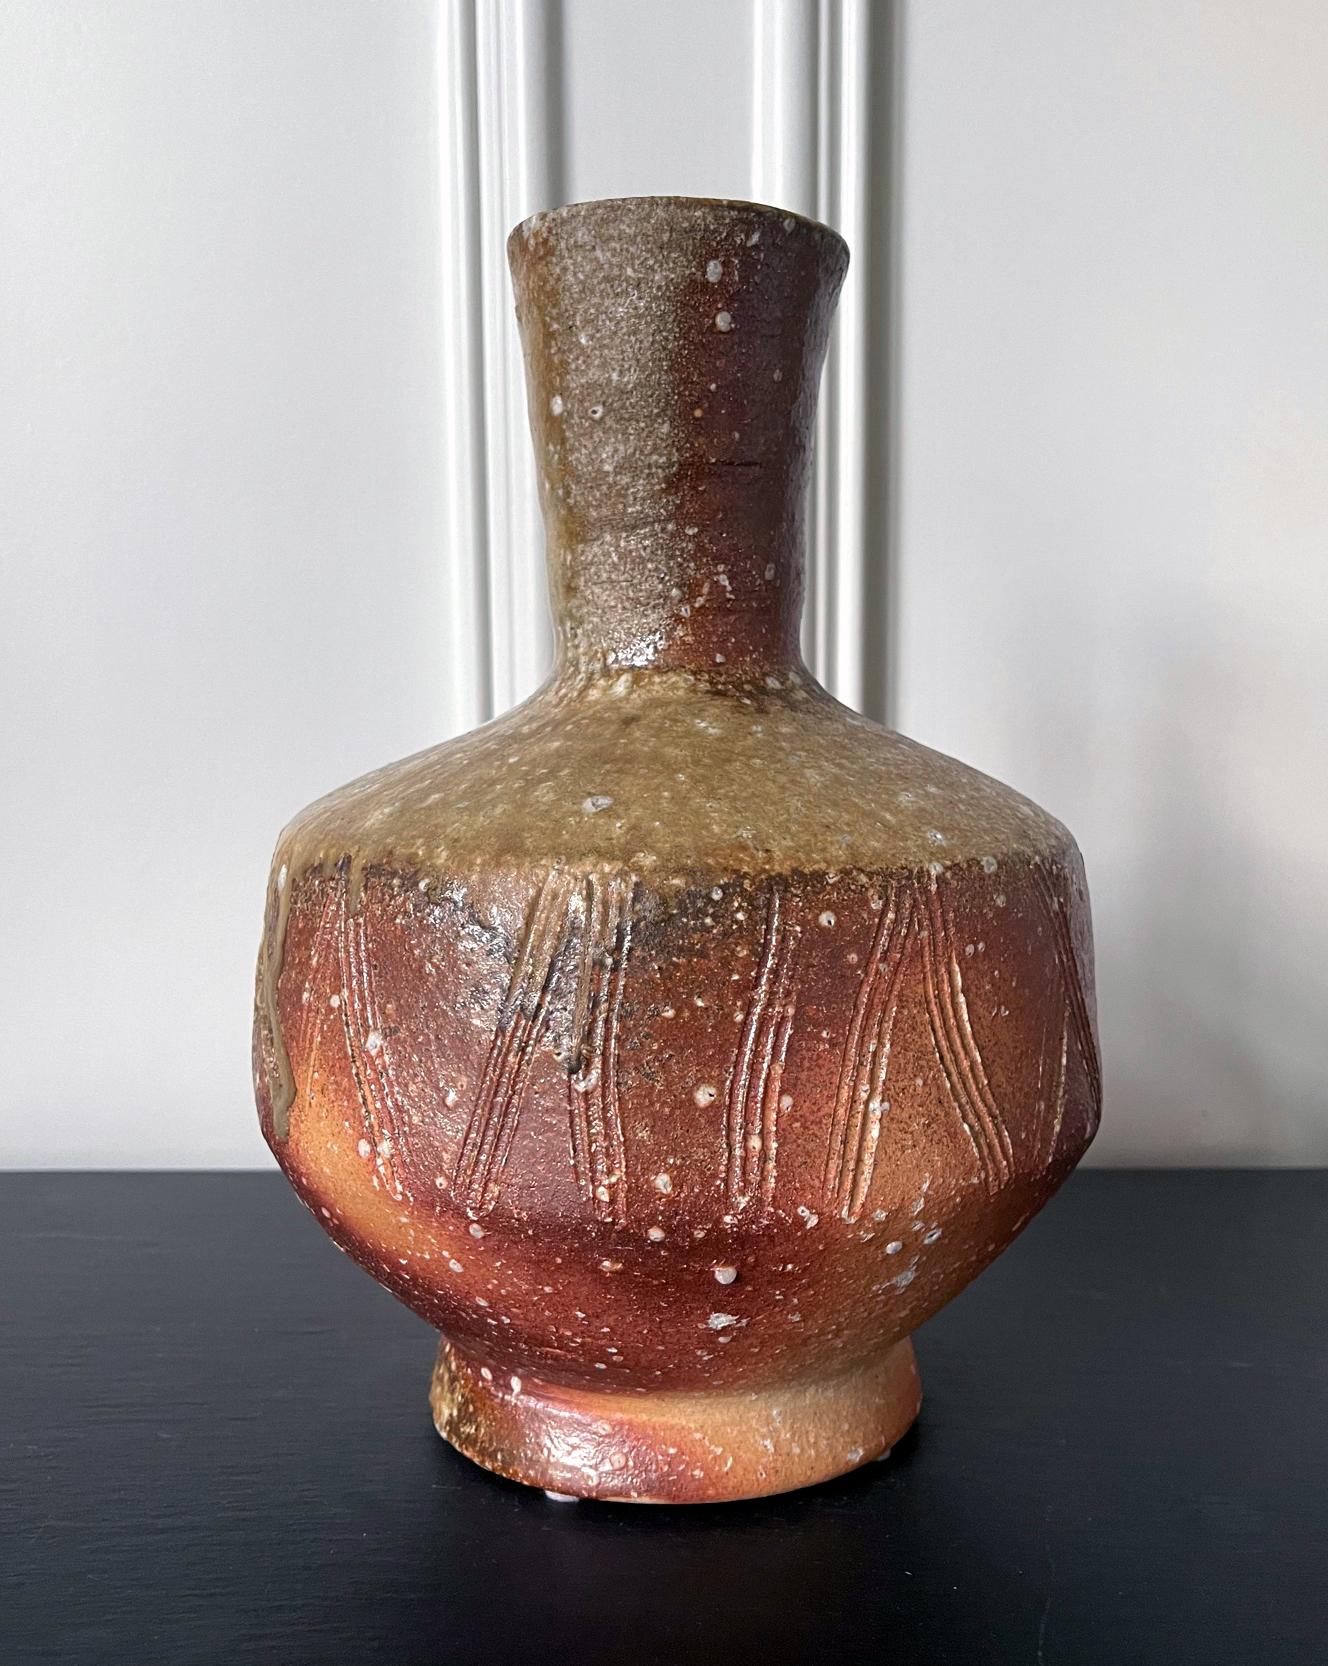 Un grand vase en céramique fabriqué dans la tradition de la céramique Shigaraki par le potier japonais Takahashi Shunsai (1927-2011), quatrième héritier de la célèbre lignée de potiers Rakusai. Le vase est fortement empoté dans l'argile sableuse